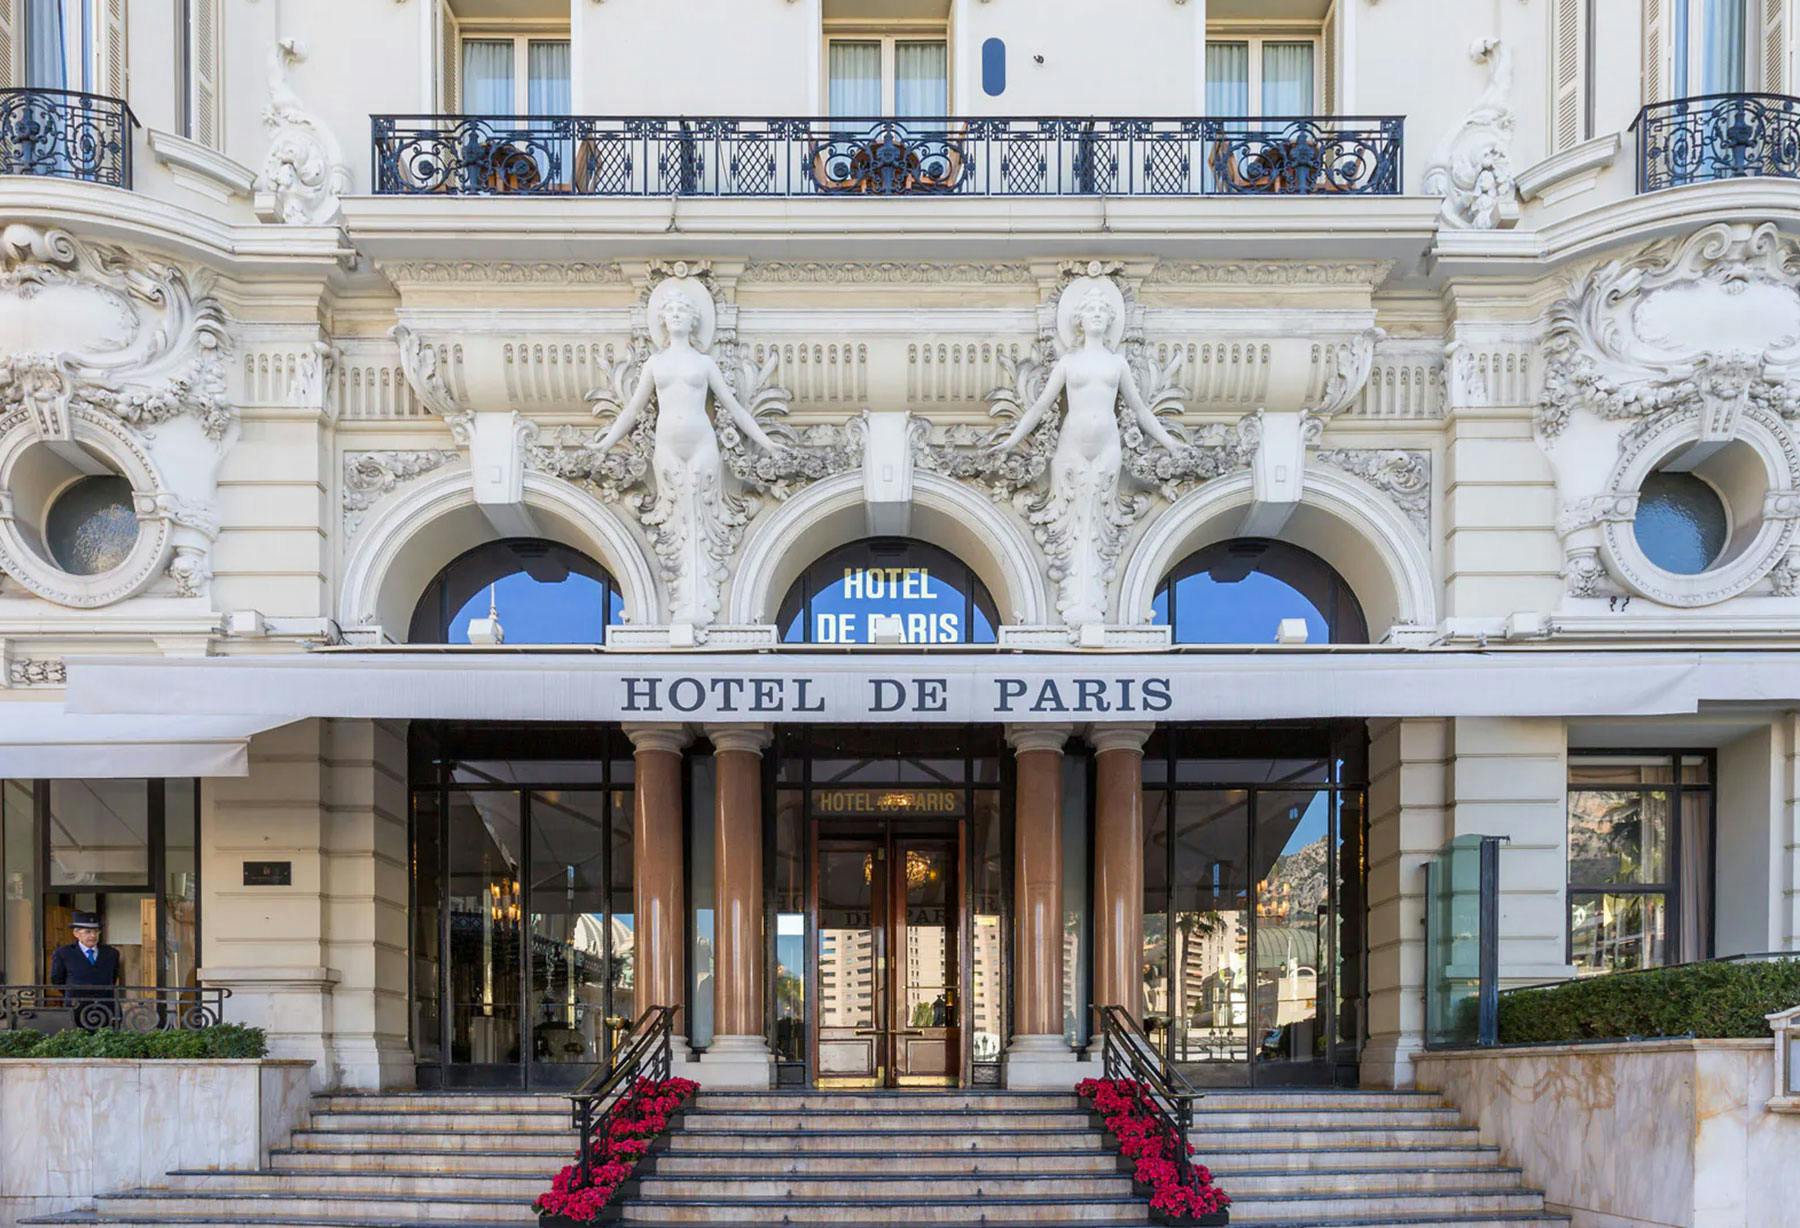 <p>В декабре модель Albero di Luce, представляющая собой интерпретацию рождественской елки от Энцо Кателлани, была в течение нескольких дней выставлена в отеле Hotel de Paris di Montecarlo по случаю благотворительного аукциона в пользу организации Action Innocence Monaco.</p>
